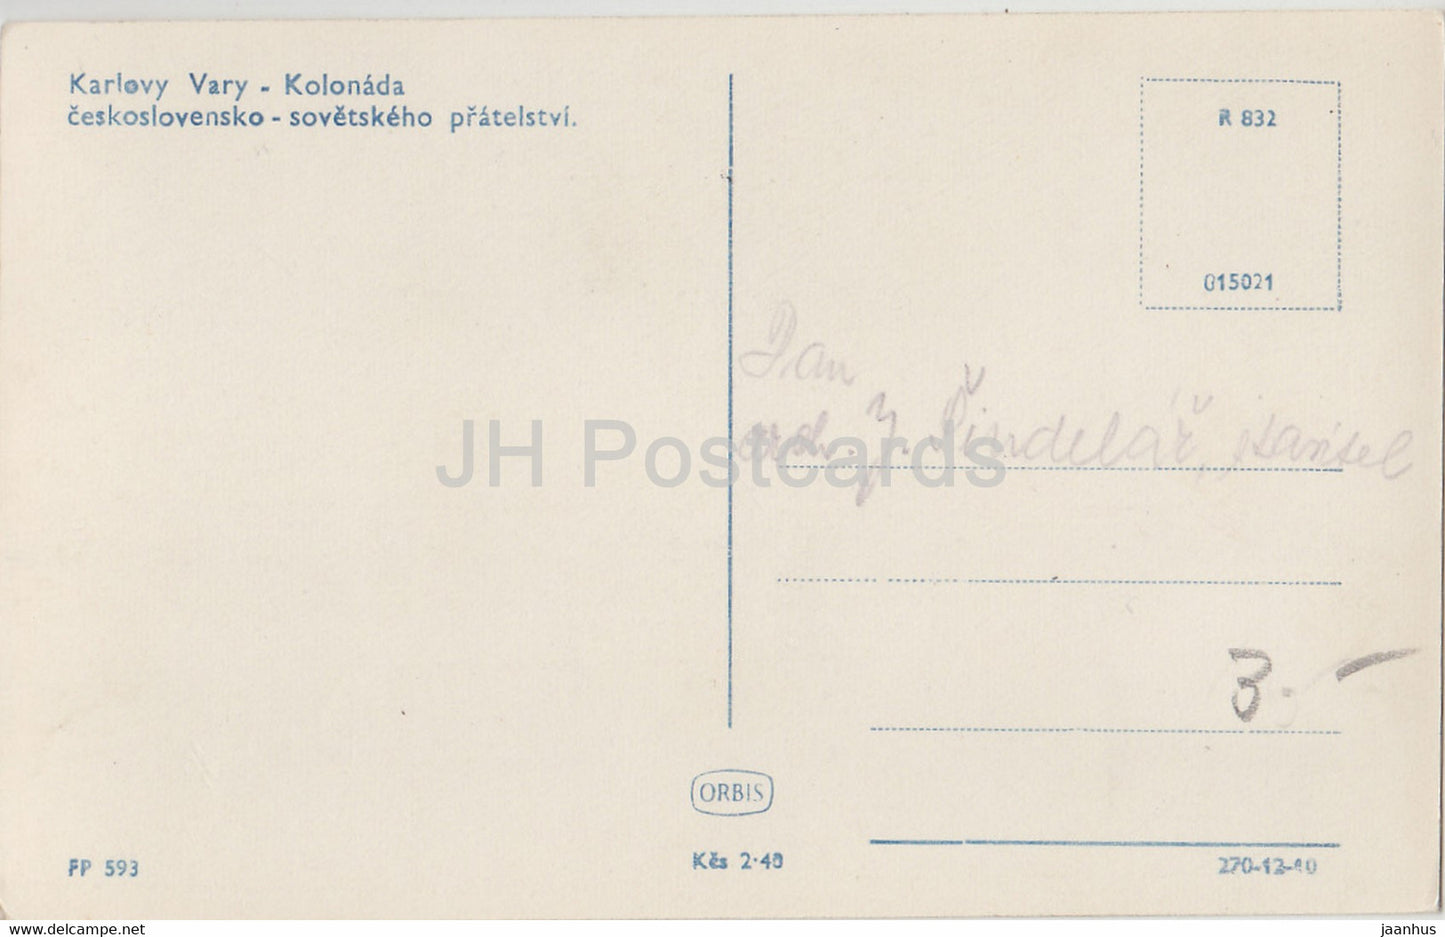 Karlsbad - Karlsbad - Kolonada - Kolonnade - 593 - alte Postkarte - Tschechoslowakei - Tschechische Republik - unbenutzt